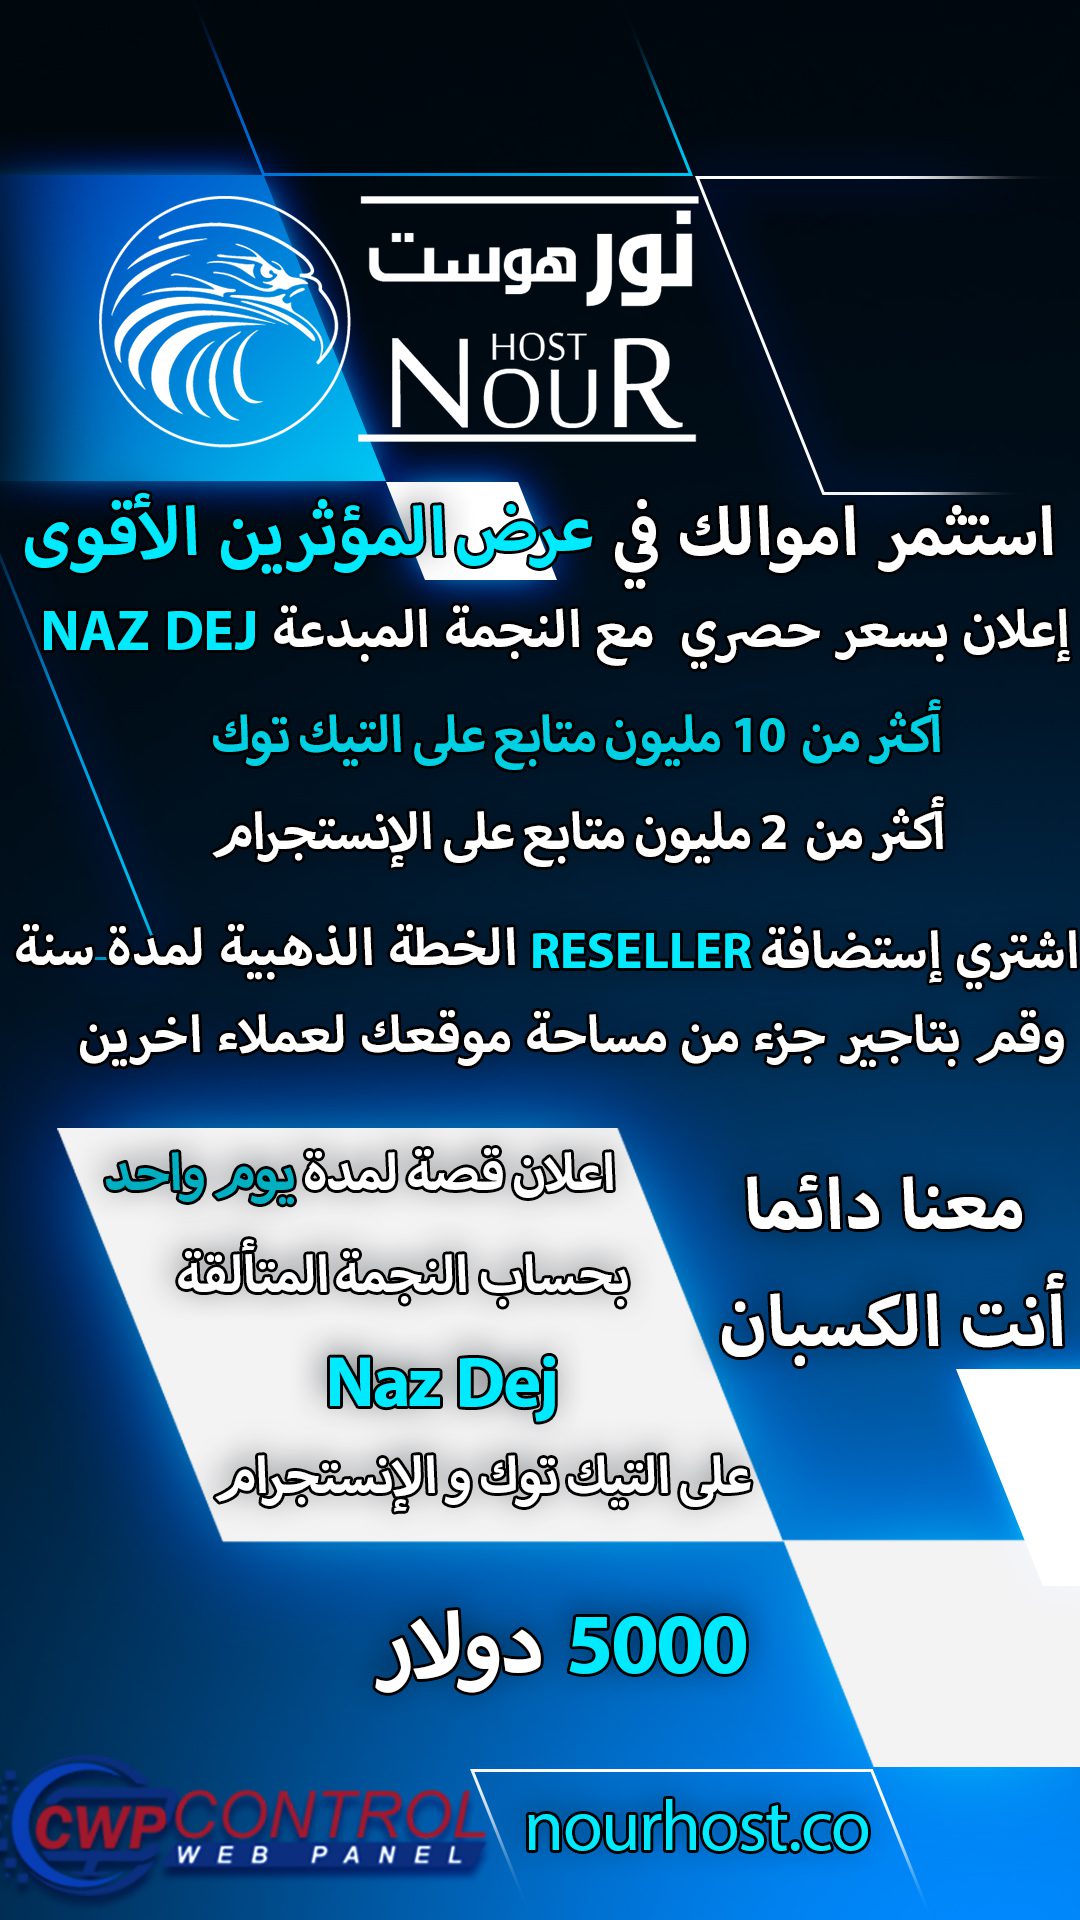 عرض المؤثرين الاقوى الثاني اعلان قصصي مع المؤثرة Naz Dej مع إستضافة نور Nour Host 3-2